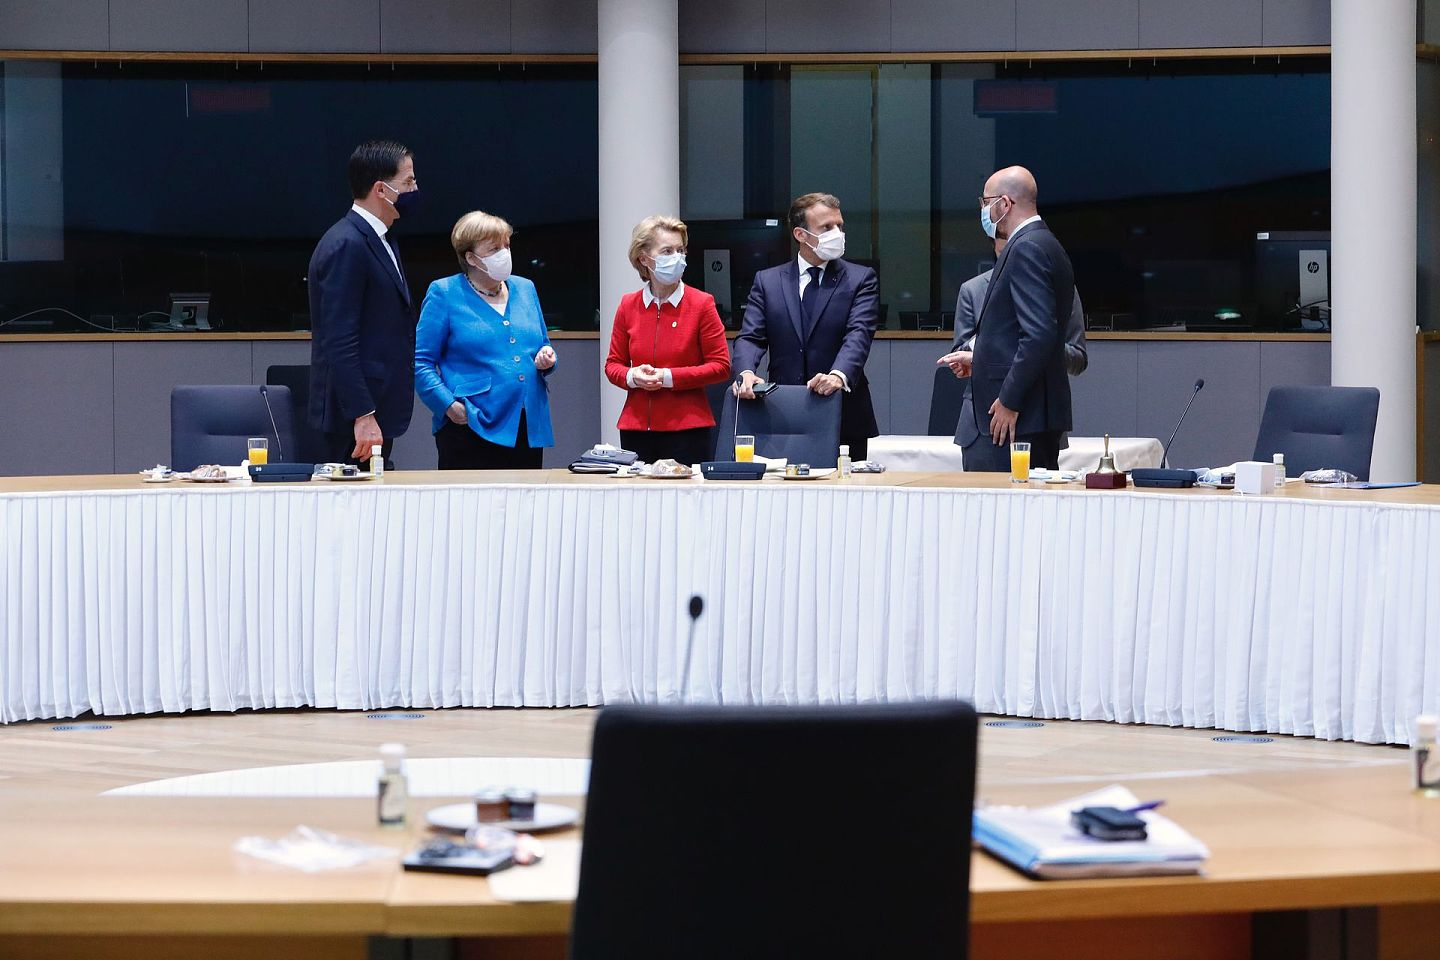 欧盟内部在诸多议题上存在分歧，各方在争吵中寻求共识。7月17日至18日，欧盟成员国领导人在布鲁塞尔举行新冠疫情暴发后首个面对面峰会，图为7月18日，荷兰首相吕特、德国总理默克尔、欧盟委员会主席冯德莱恩、法国总统马克龙、欧洲理事会主席米歇尔（左至右）出席会议。（新华社）